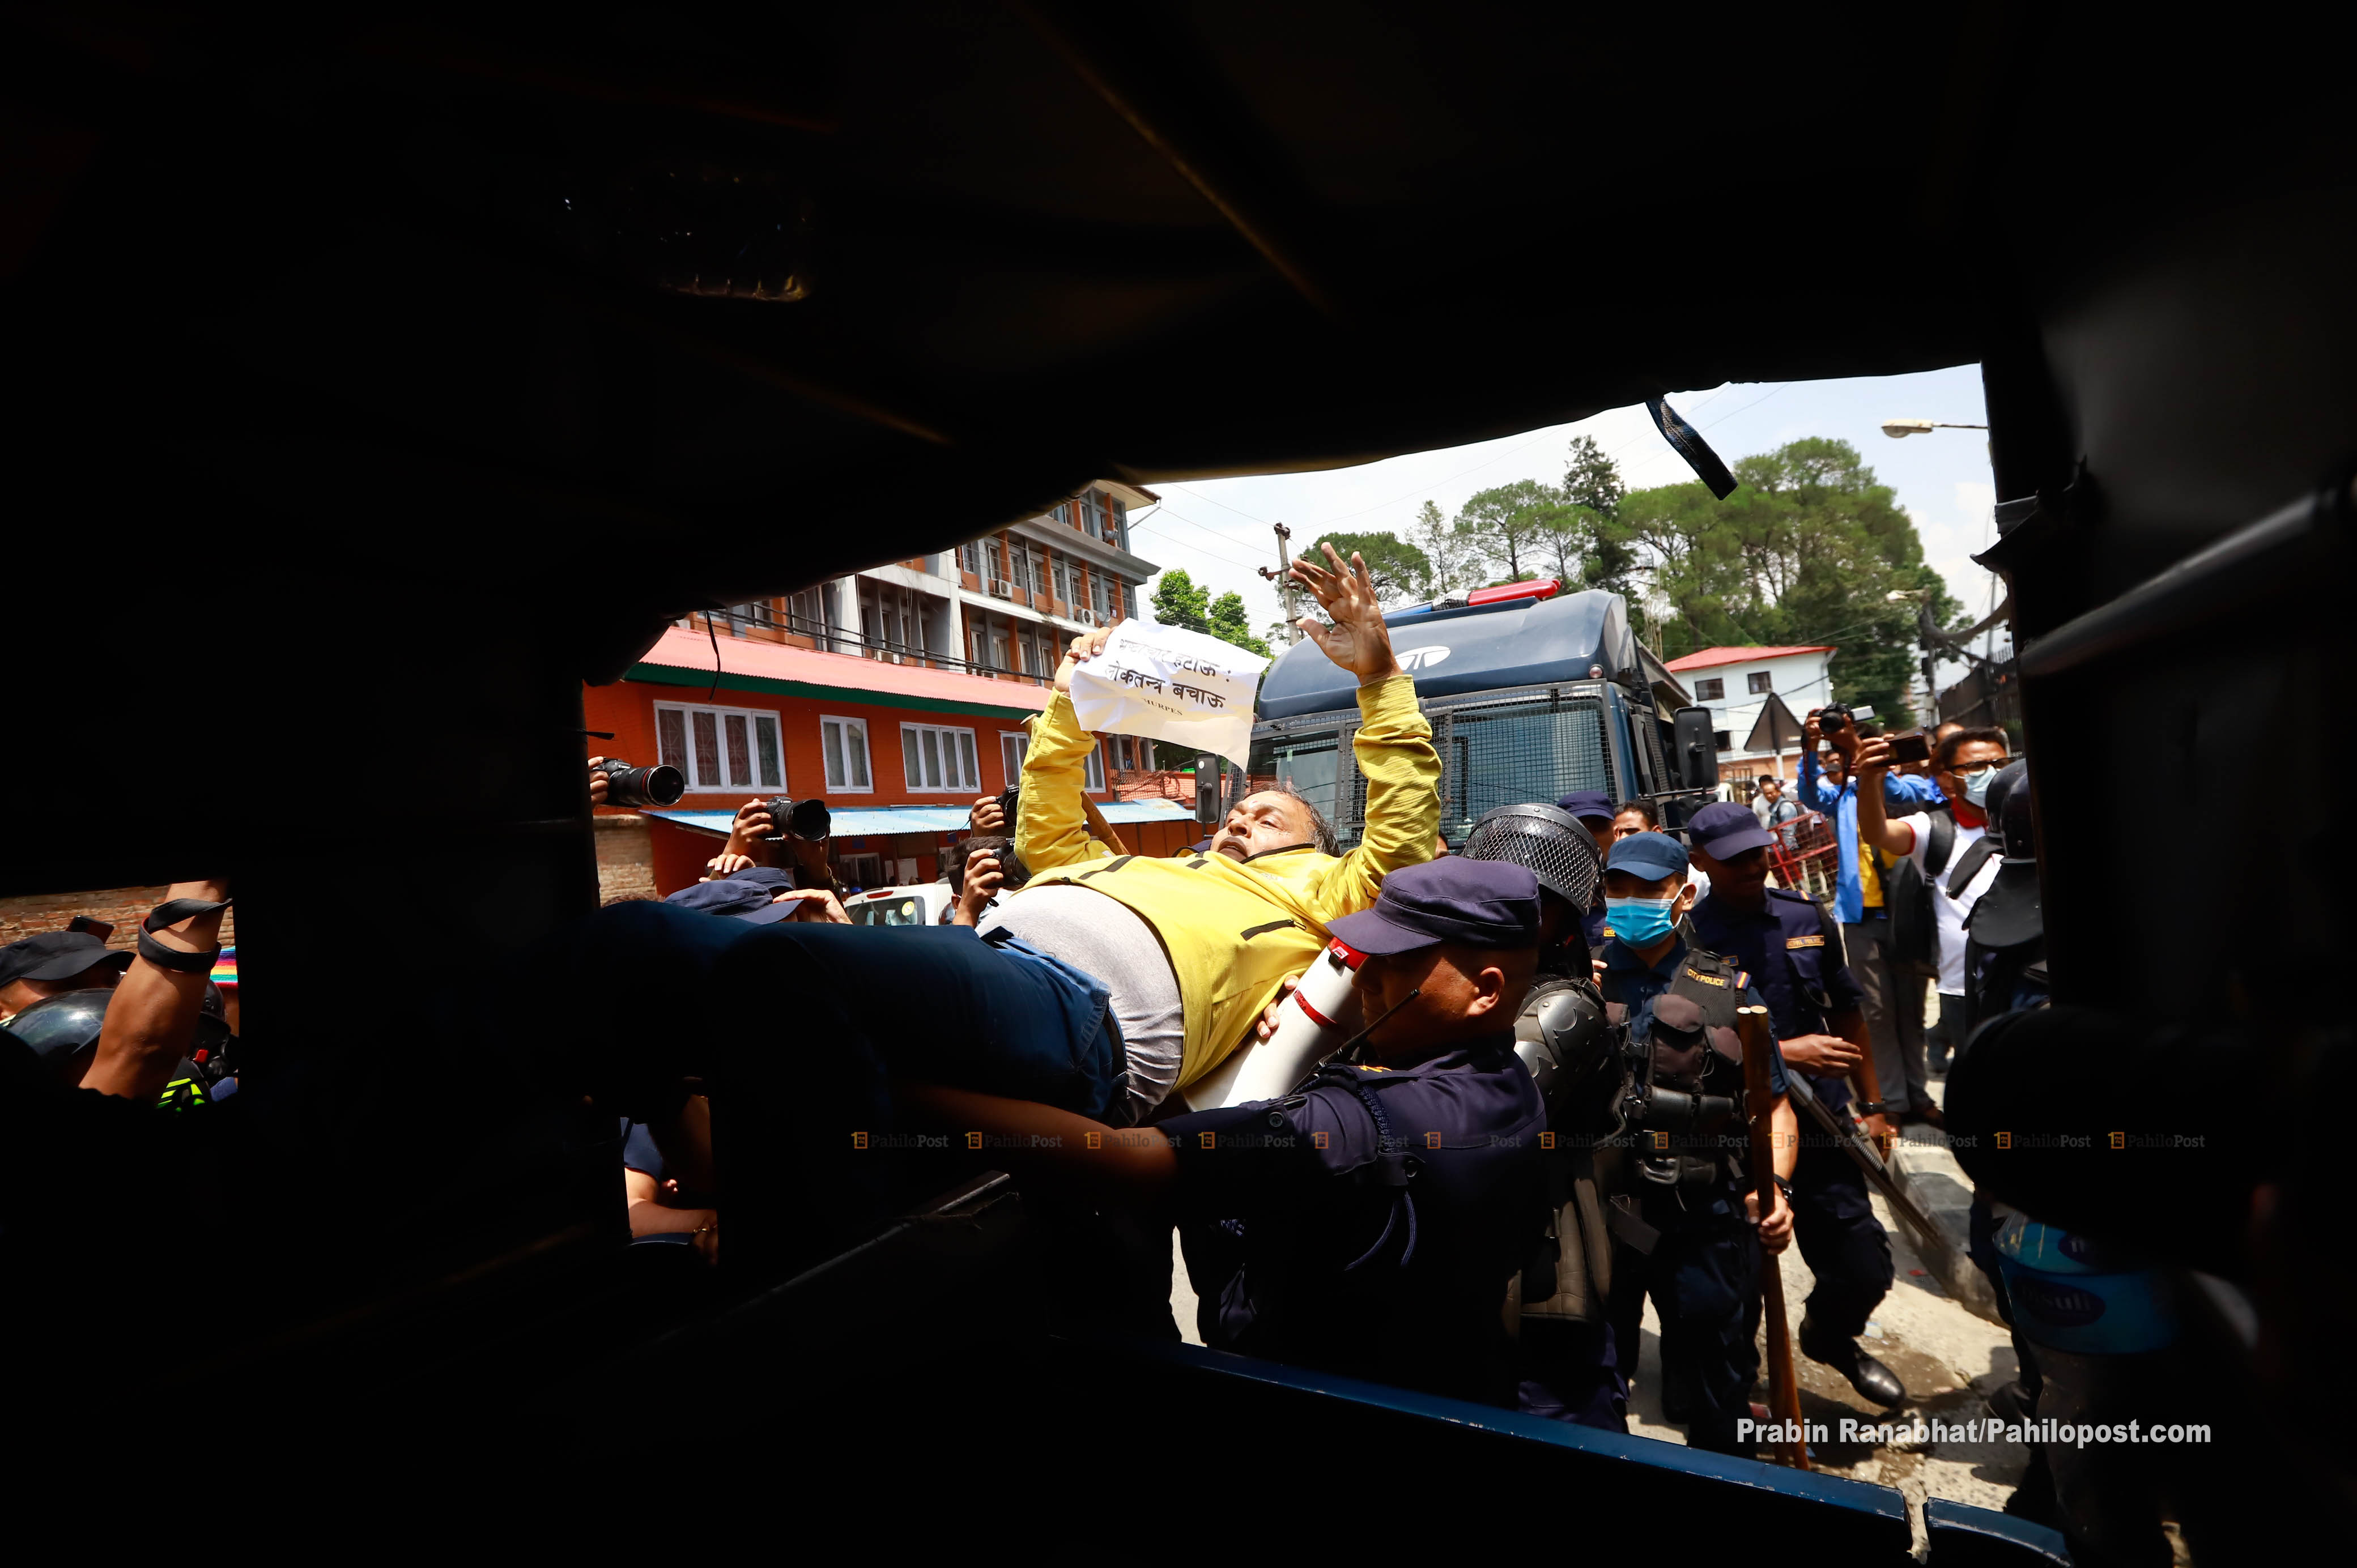 'शीर्ष नेता भ्रष्ट छन्, नेपाली जनता त्रस्त छन्' सिंहदरबारअगाडि नारा घन्किएपछि प्रहरी यसरी उत्रियो धरपकडमा